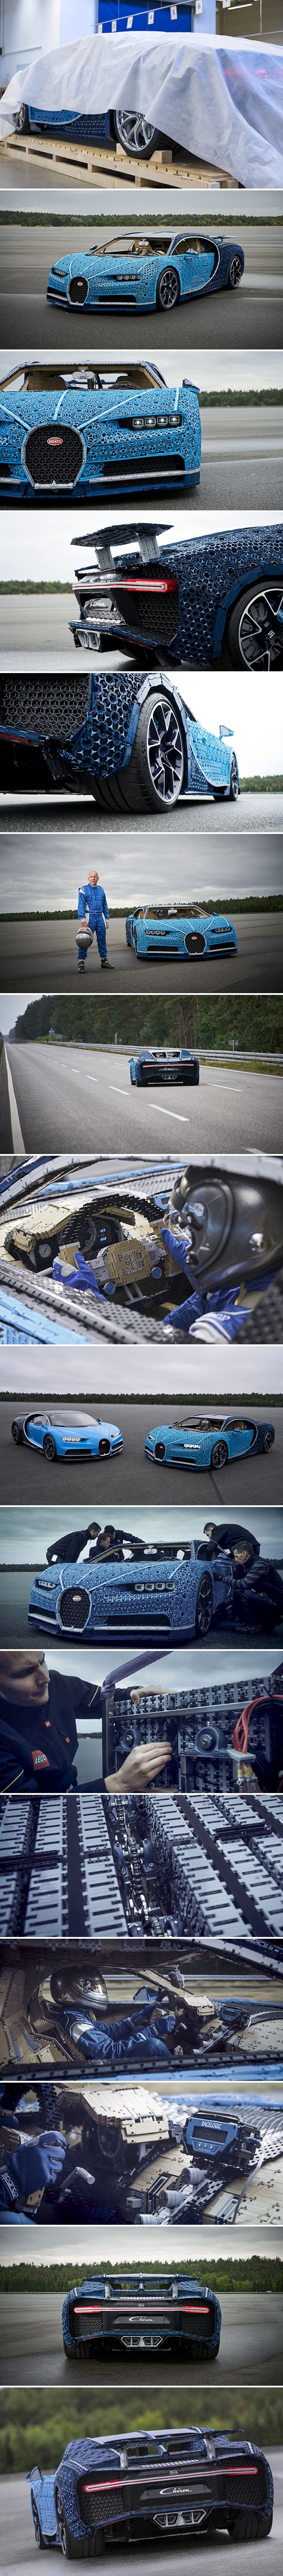 LEGO je složio Bugatti Chiron od preko milijun kockica, probna vožnja izgledala je nestvarno